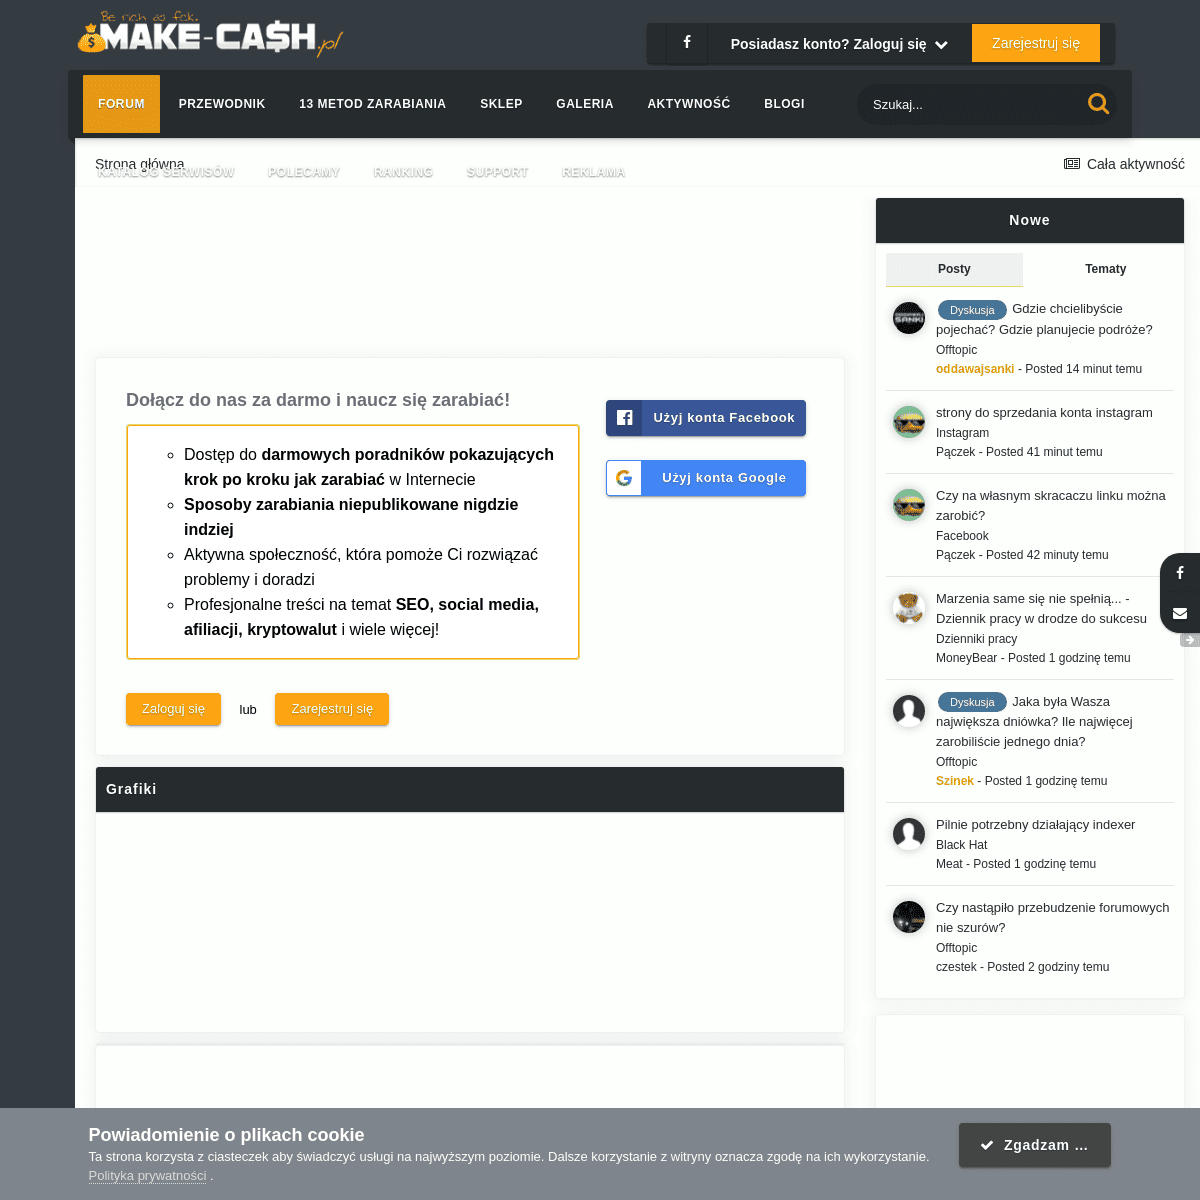 A complete backup of https://make-cash.pl